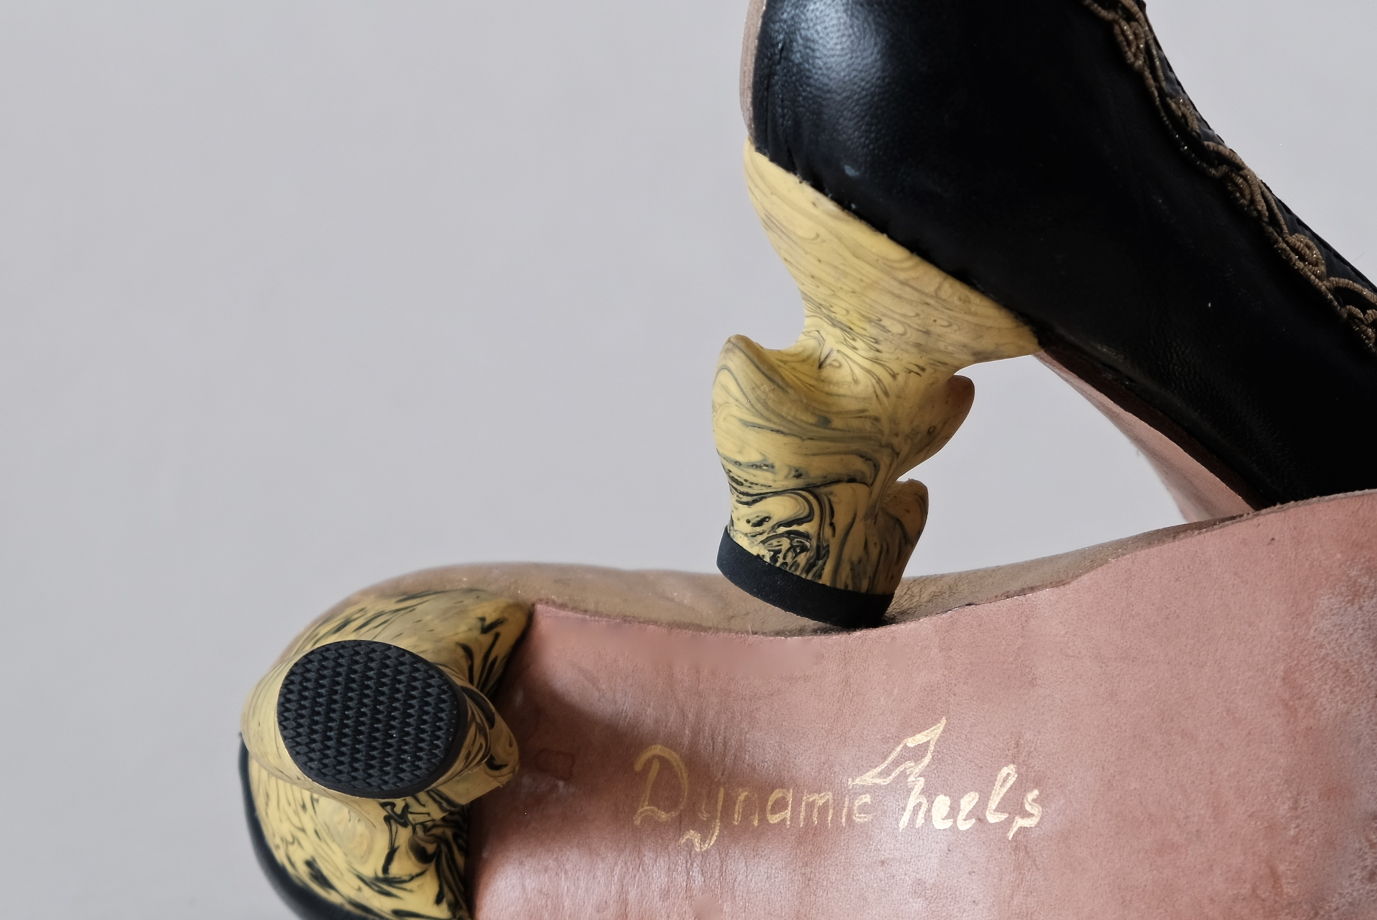 Черно-золотые туфли с динамическими каблуками. Размер 40